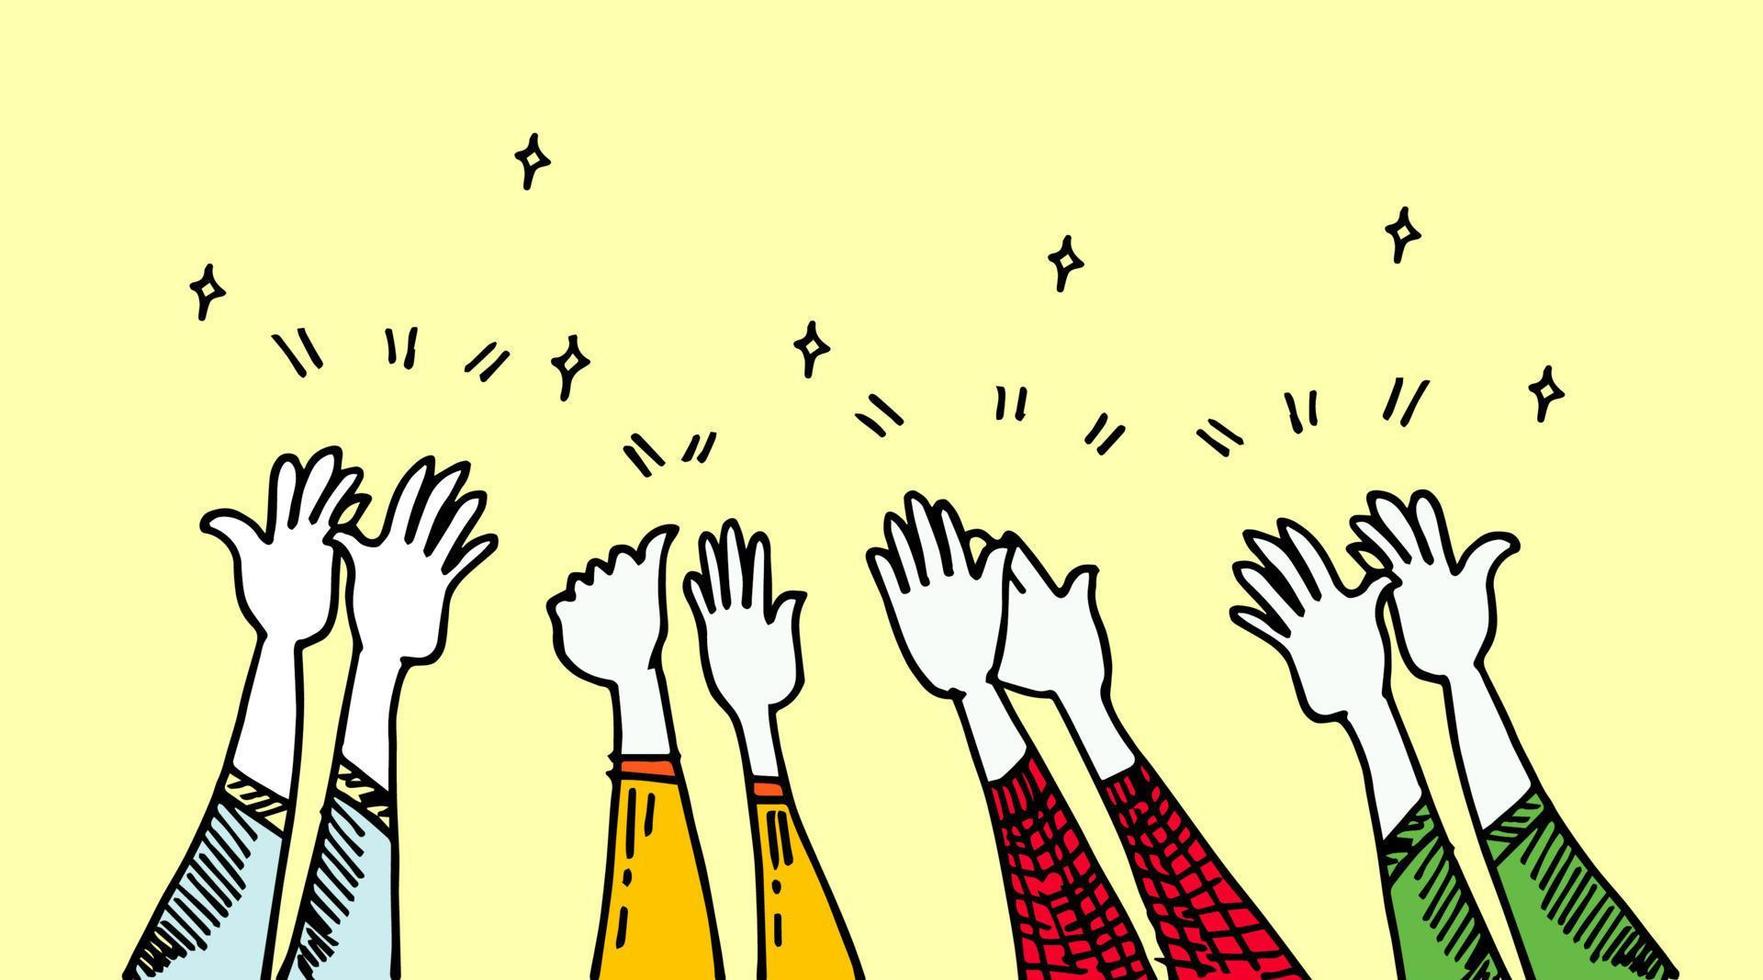 Cartoon-Stil von Händeklatschen. hände hoch, applaus und daumen hoch gesten. Hände Menschen für Konzeptdesign. Doodle-Vektor-Illustration vektor